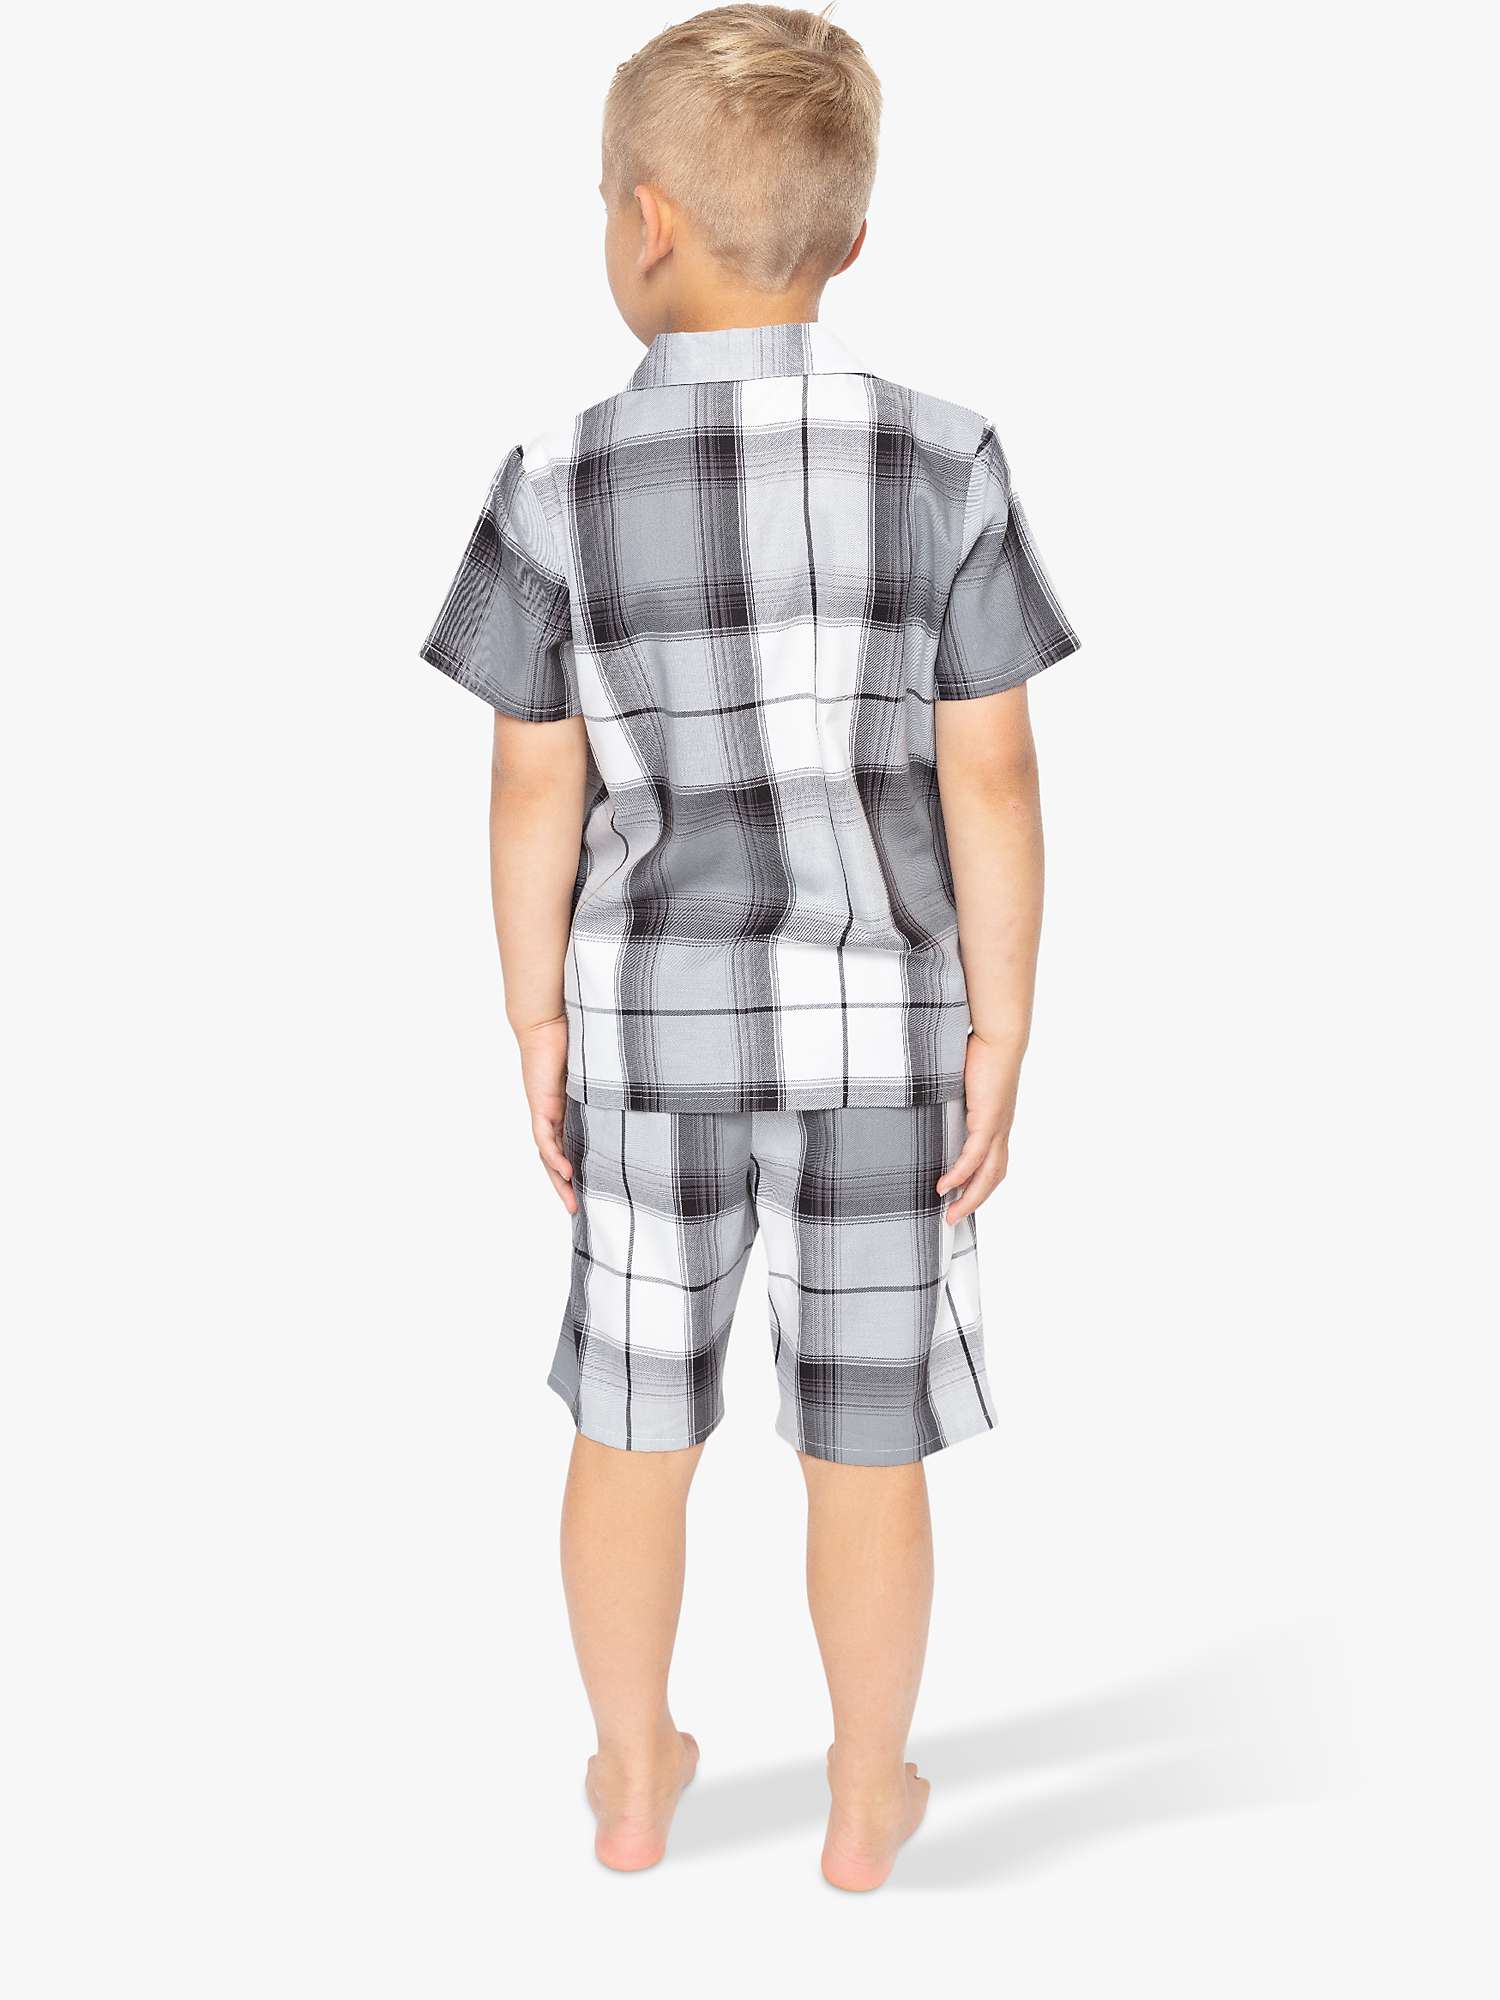 Buy Cyberjammies Kids' Samuel Check Print Shortie Pyjamas, Grey Online at johnlewis.com